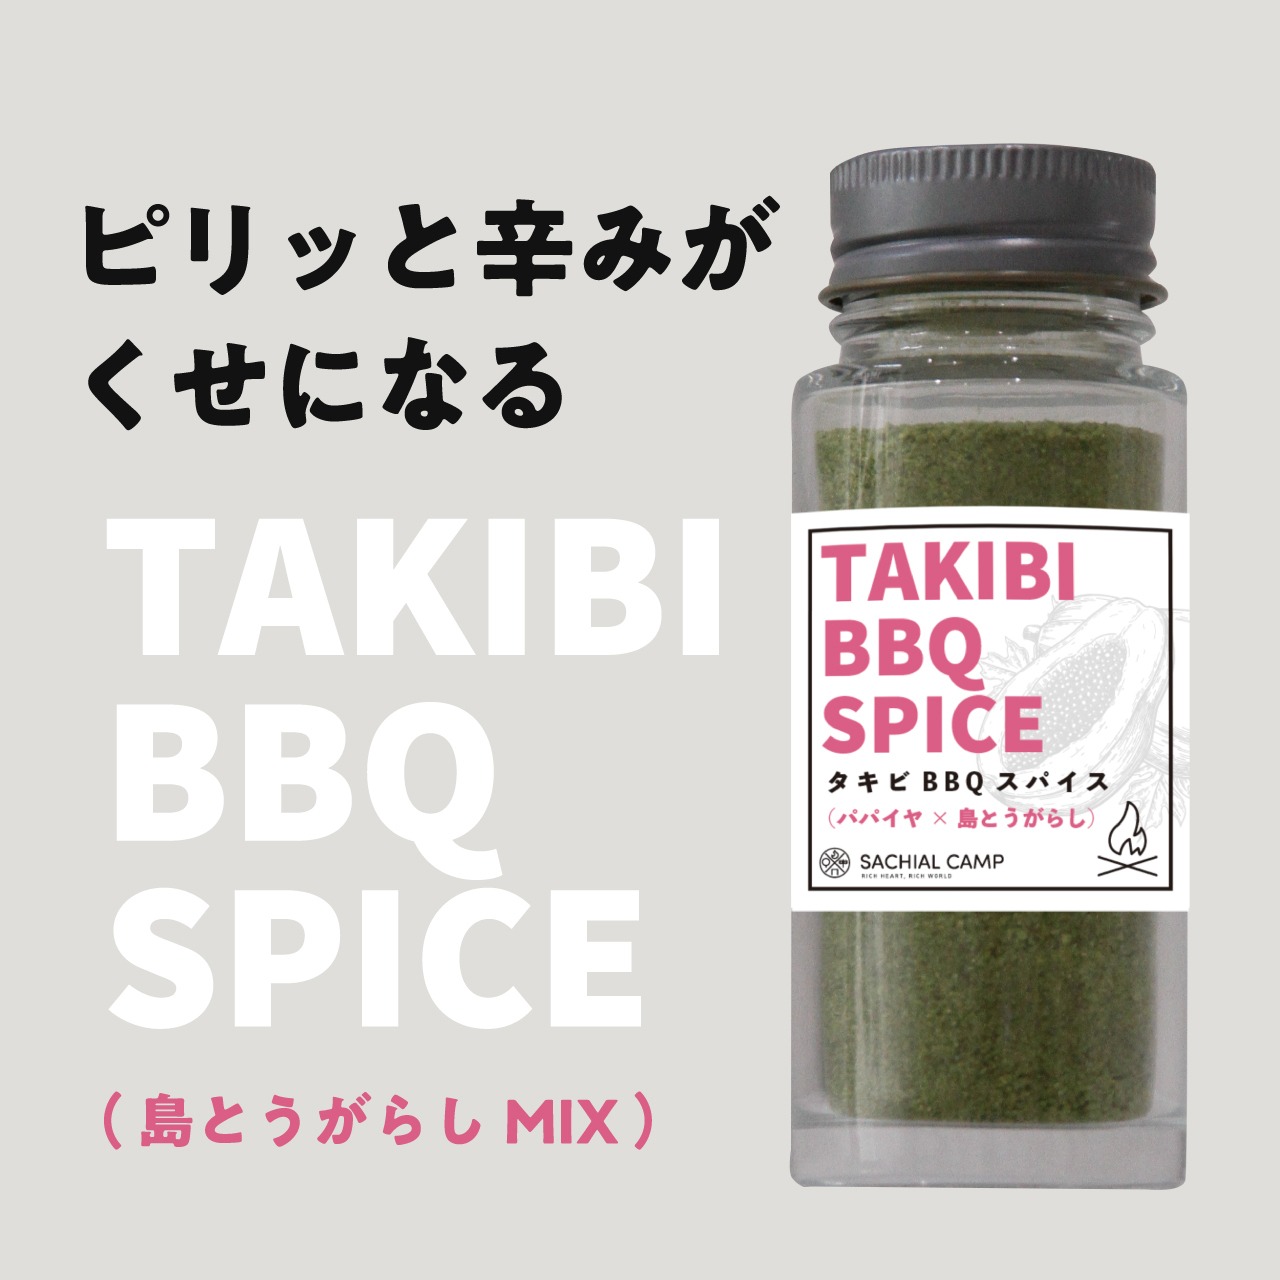 【純けいにベストマッチ】TAKIBI BBQ スパイス（島とうがらしMIX）